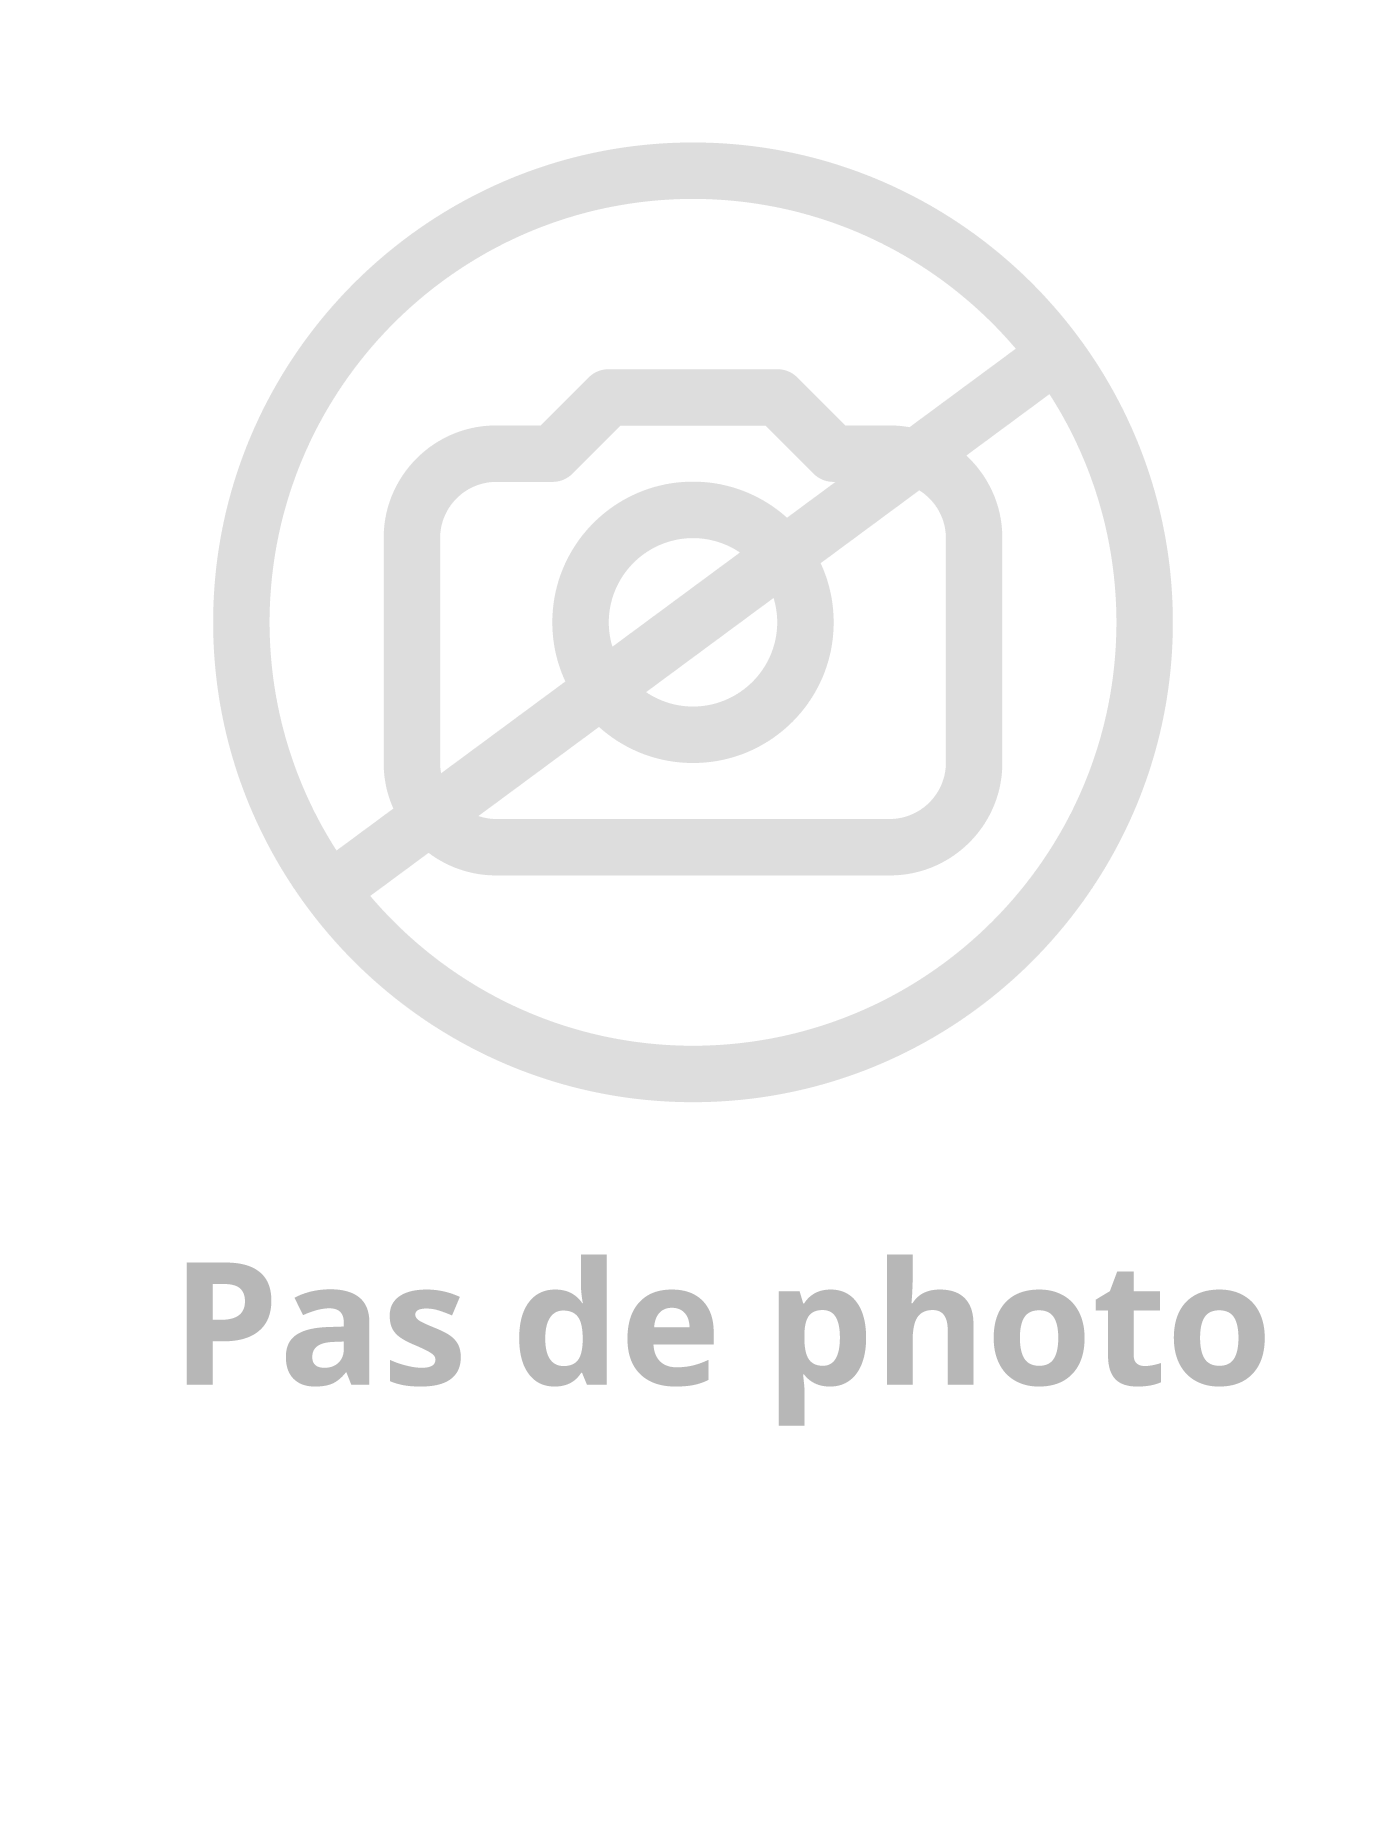 Image du produit MASTIC COLLE MS POLYMÈRES "PARABOND" - TRANSPARENT - CARTOUCHE 290ml